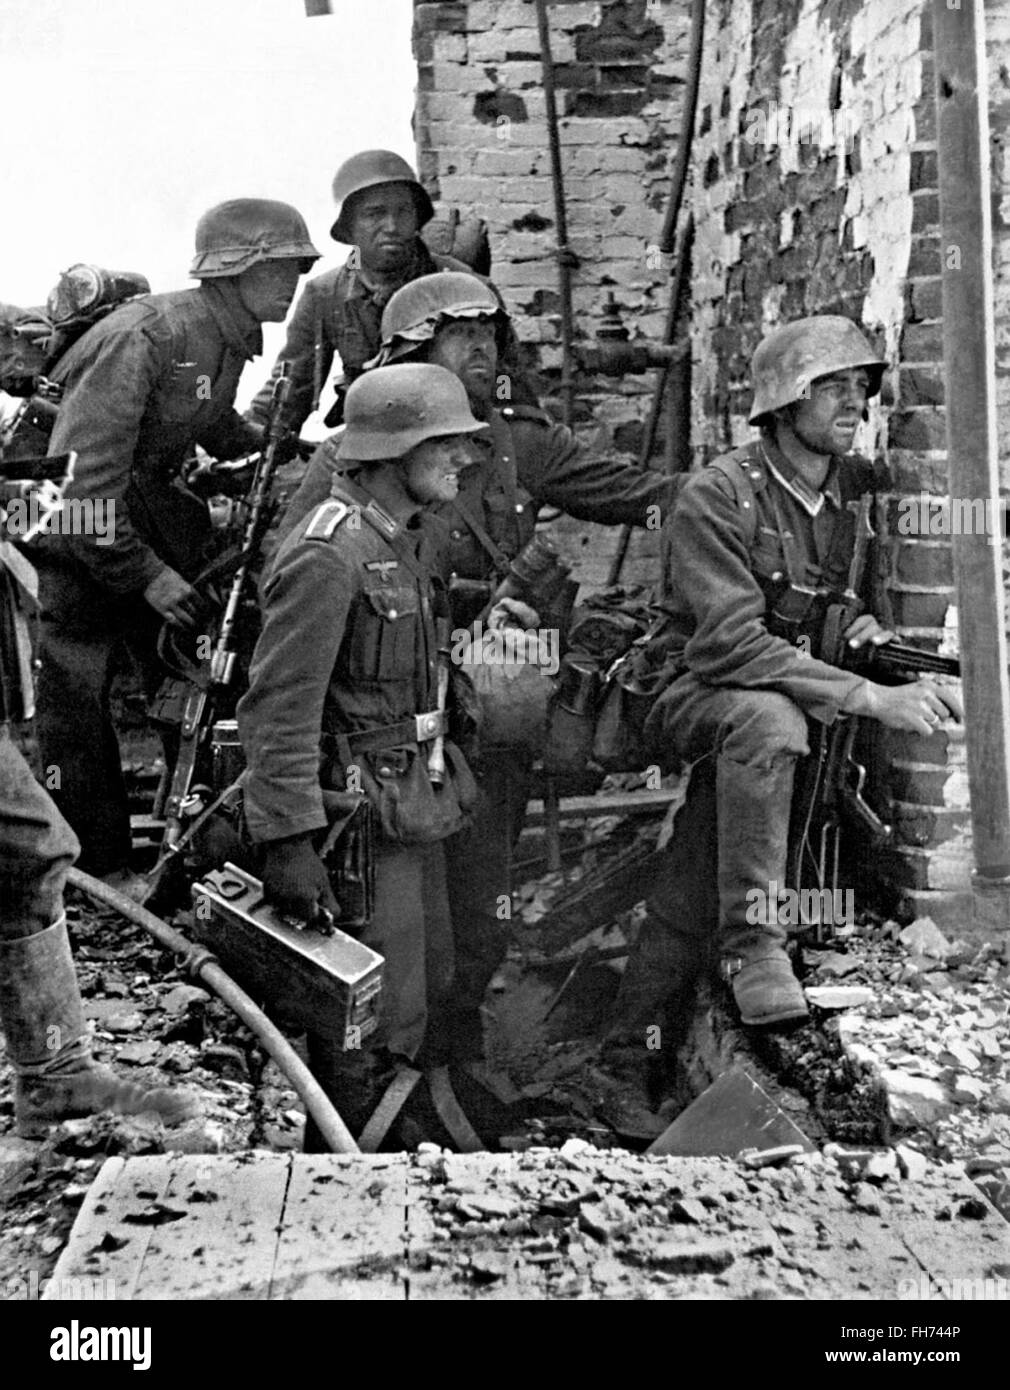 Battaglia di Stalingrado soldati tedeschi pronti ad attaccare - Tedesco Propaganda nazista fotografia - SECONDA GUERRA MONDIALE Foto Stock